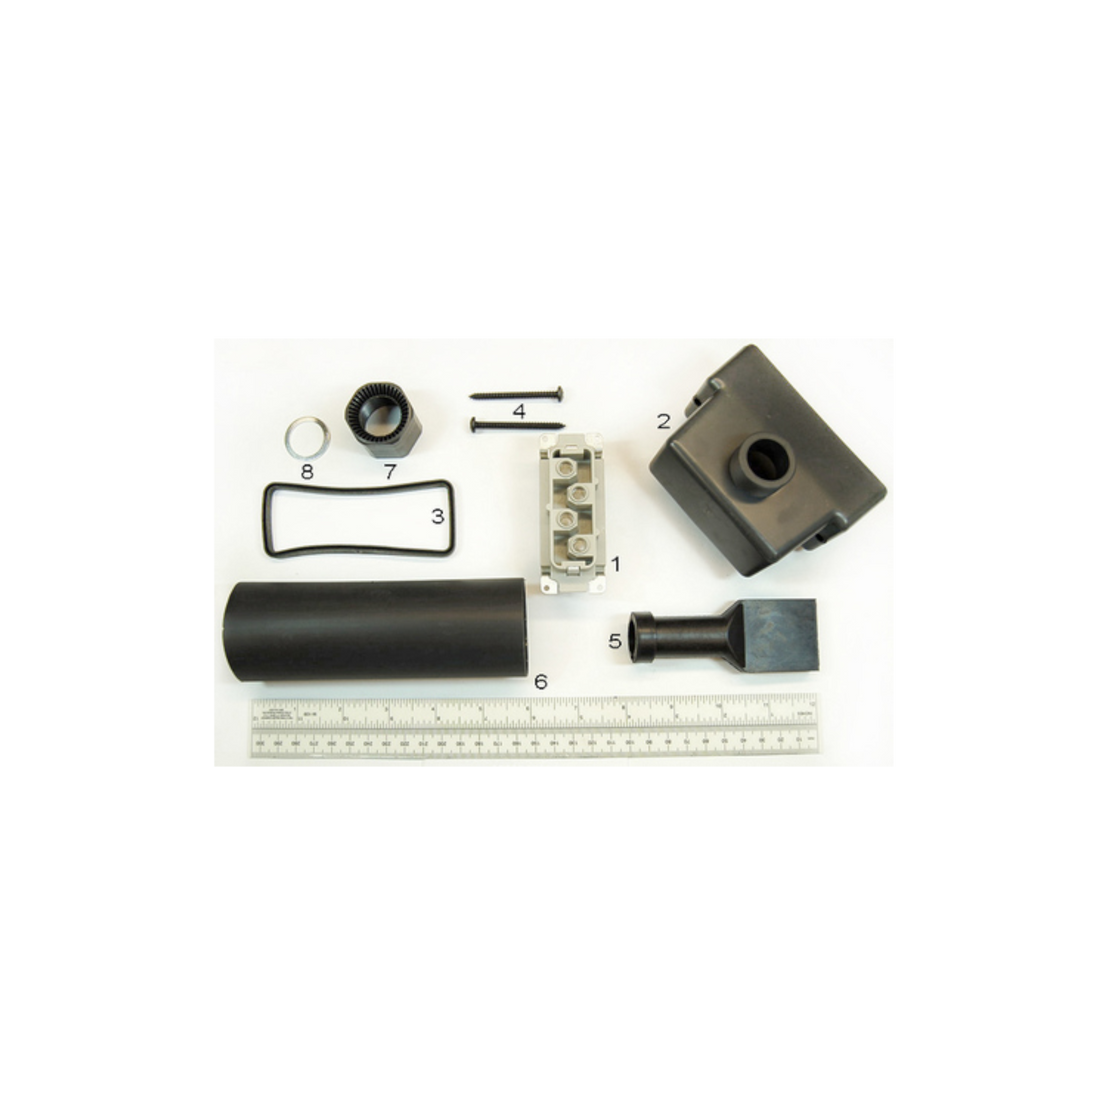 R&M Parts - Plug Set, Part Number: 2309717016